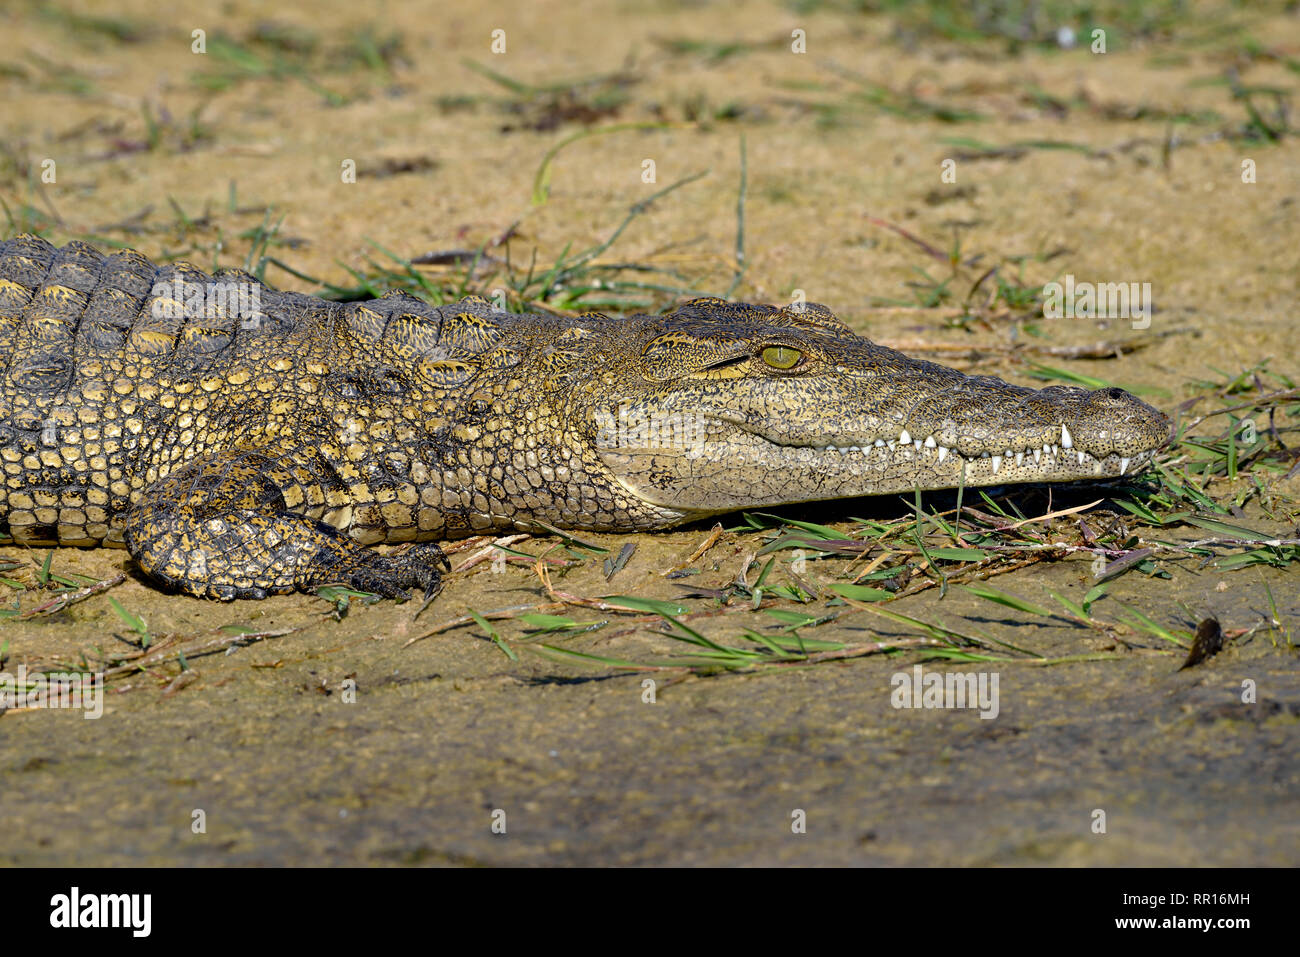 Zoologia, rettile (Reptilia), coccodrillo del Nilo (Crocodylus niloticus cowiei), Gomoti Area di concessione, Oka, Additional-Rights-Clearance-Info-Not-Available Foto Stock